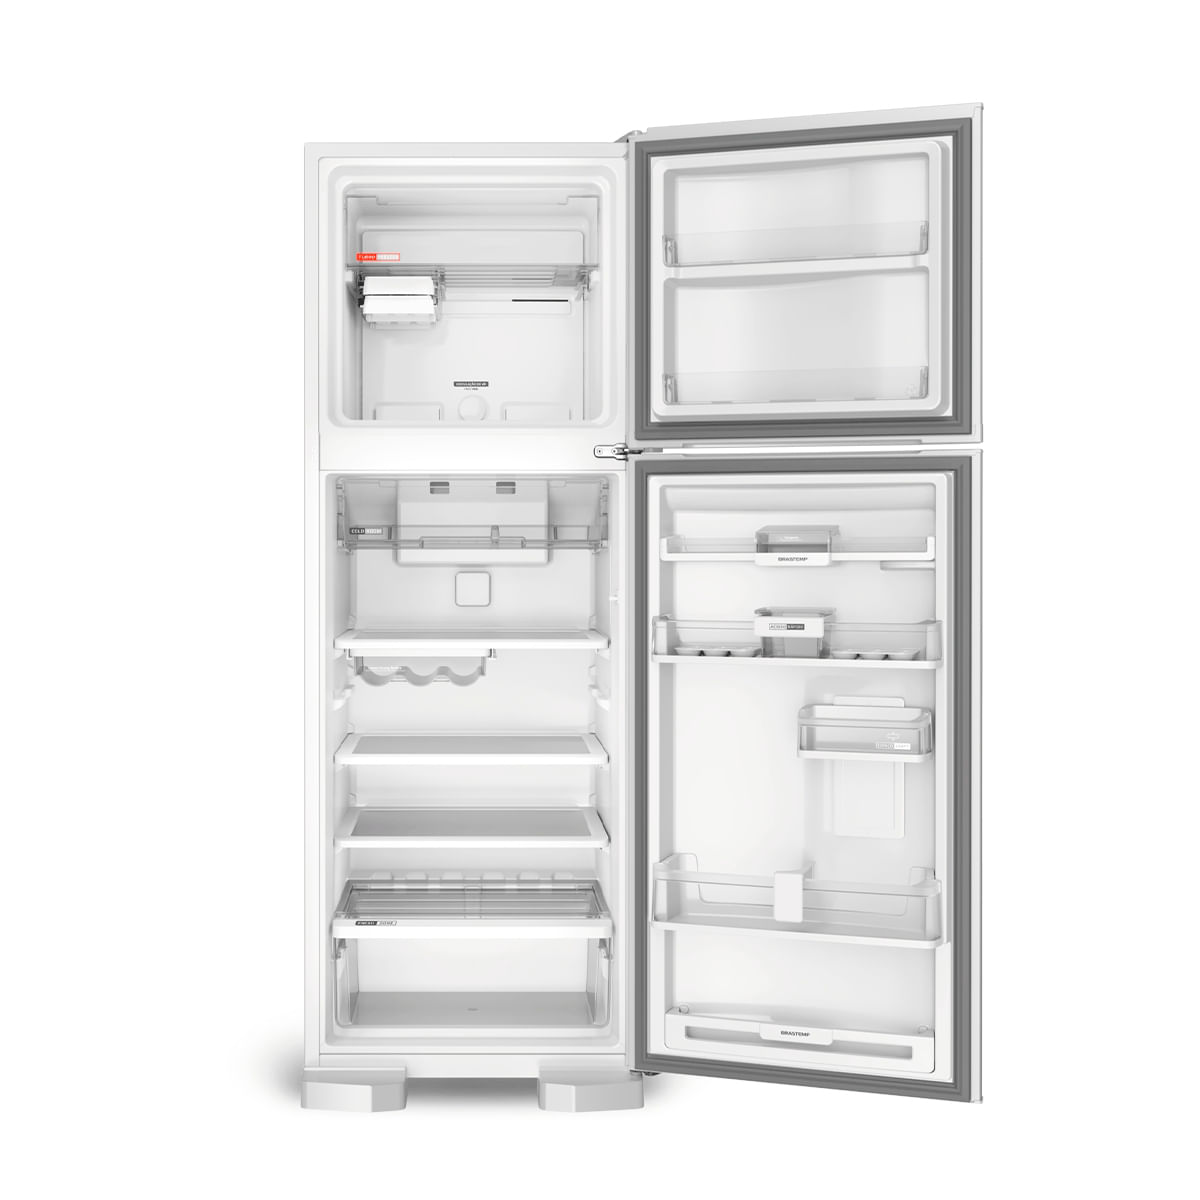 refrigerador-brastemp-2-portas-branco-375l-frost-free-220v-brm45hbbna-4.jpg